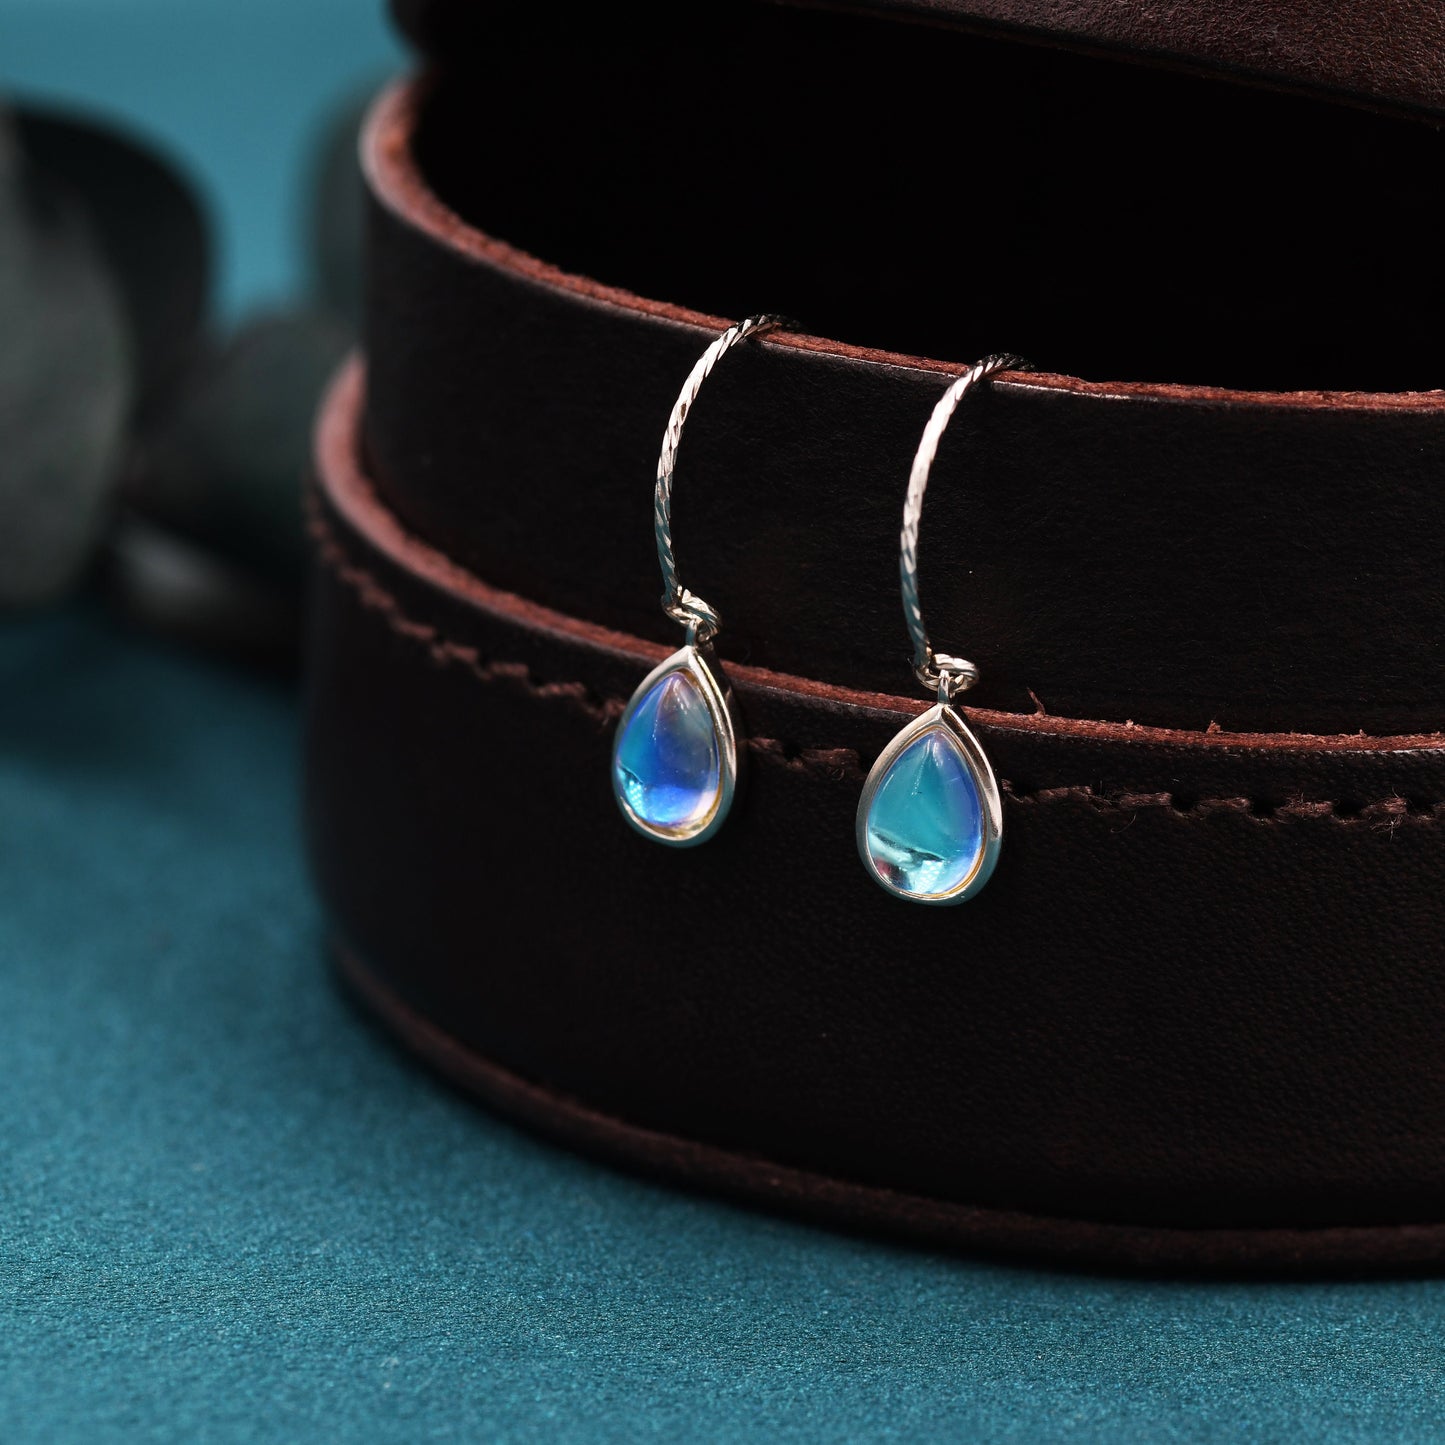 Mermaid Crystal Drop Hook Earrings in Sterling Silver, Droplet Pear Cut Aurora Glass Crystal, Blue Flash Simulated Moonstone